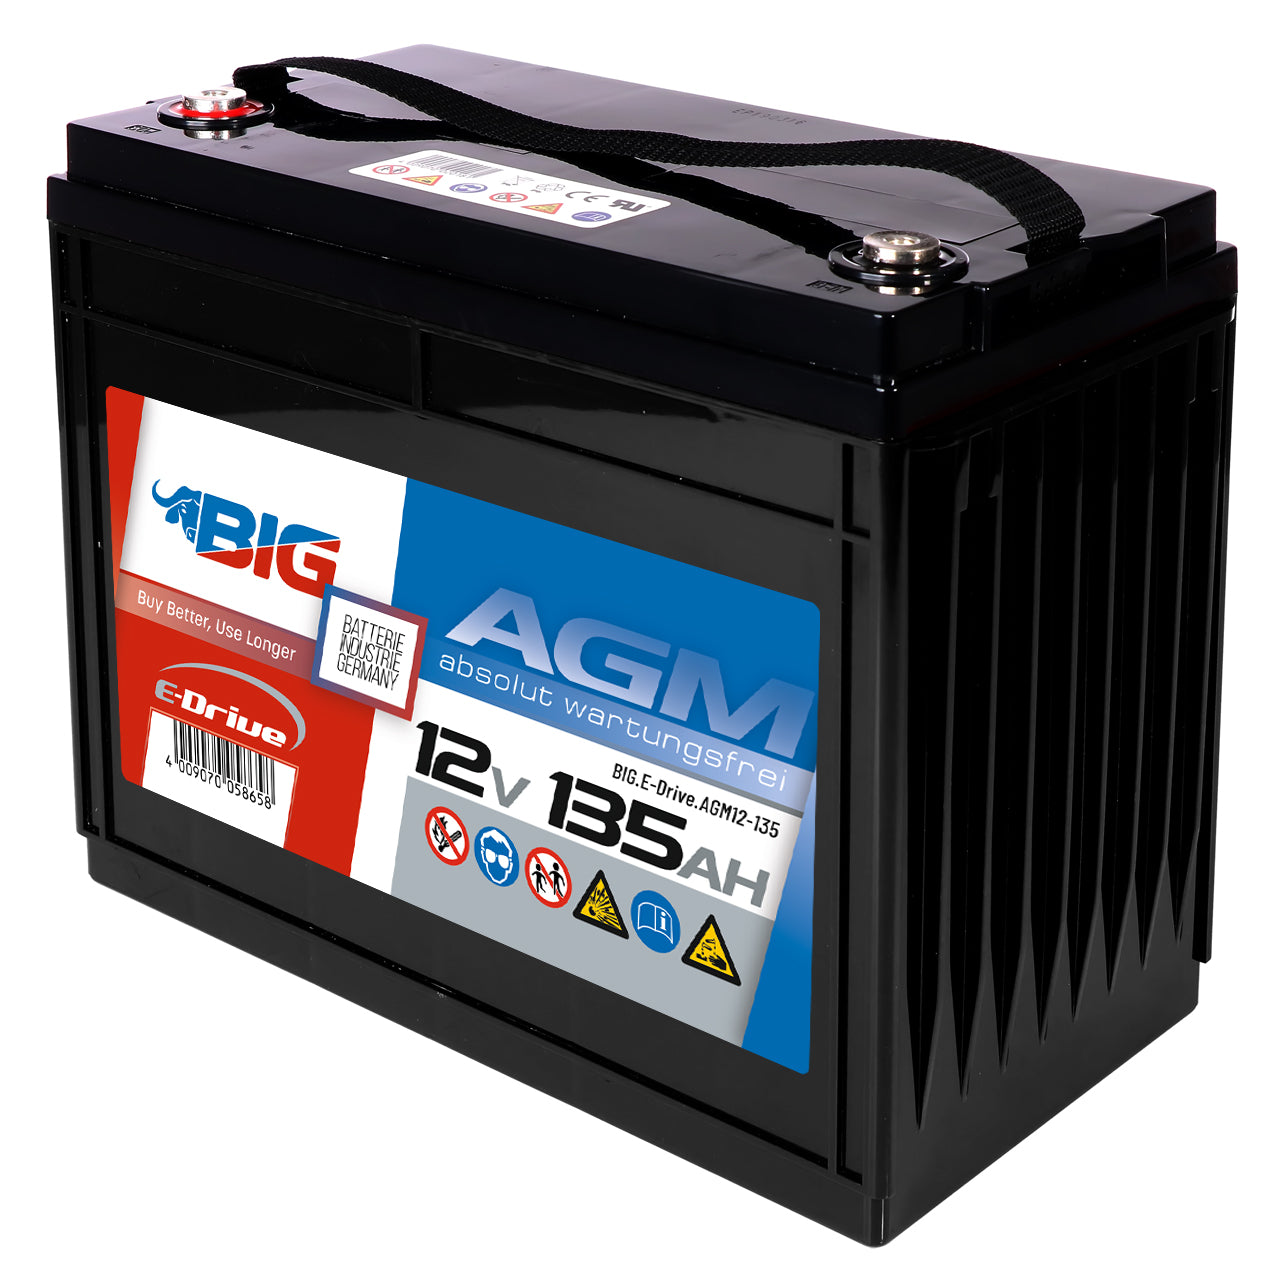 BIG E-Drive AGM 12V 135Ah